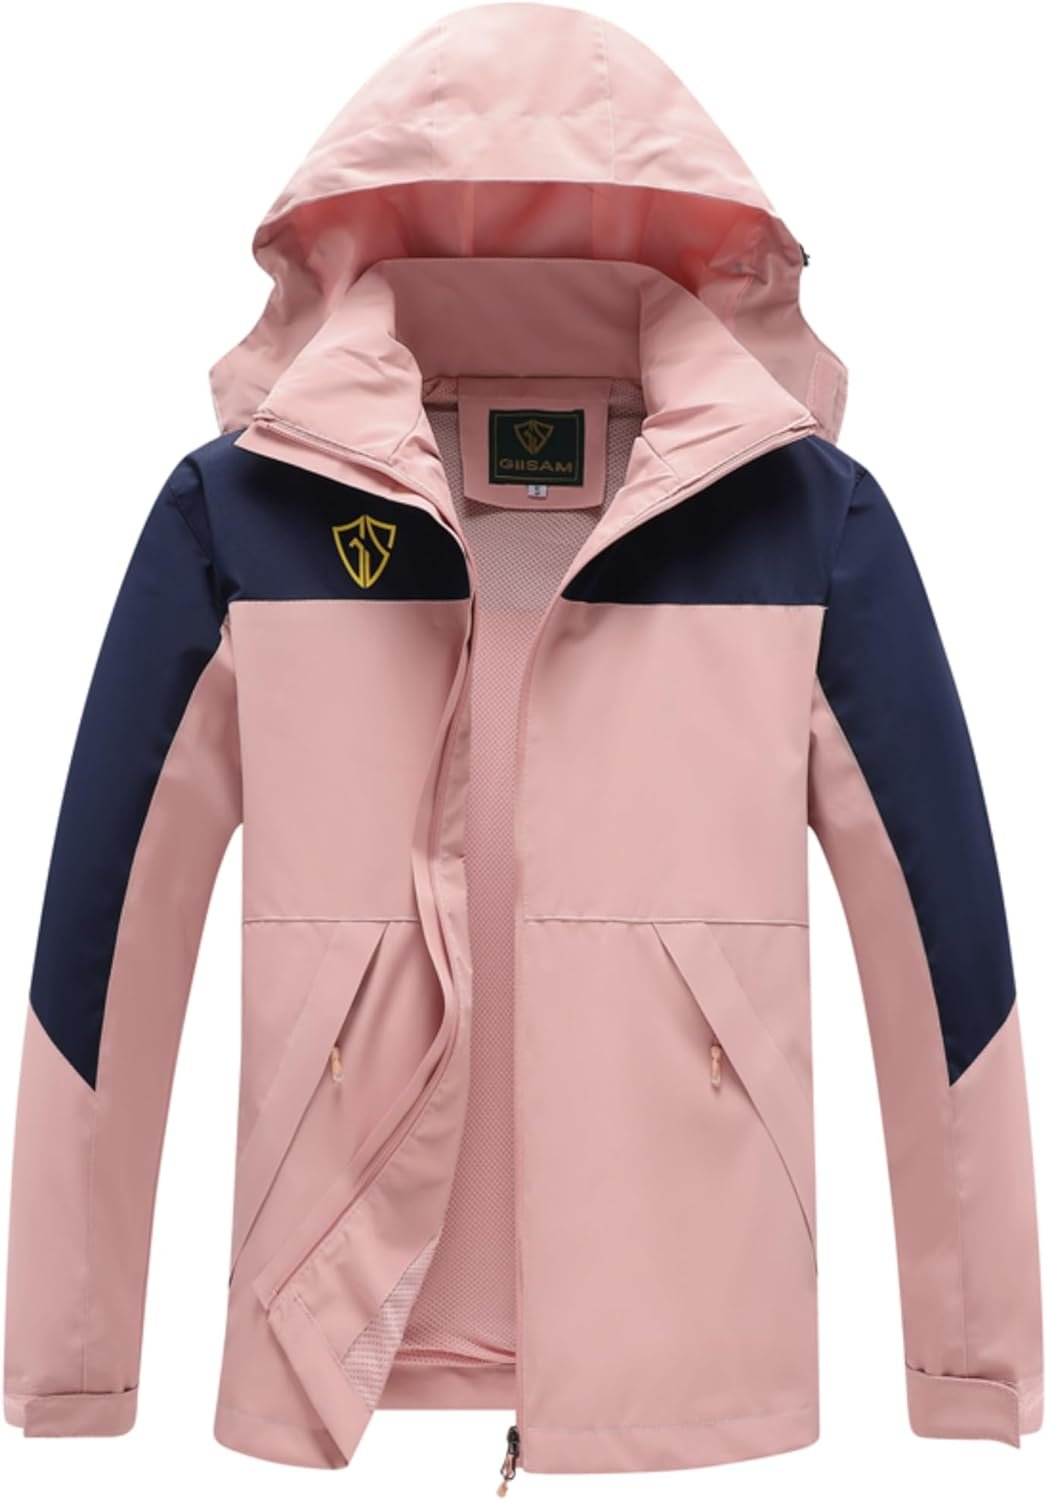 GIISAM Rain Jacket for Women, Womens Waterproof Lightweight Rain Jackets Packable Raincoat Windbreaker Coat with Hood